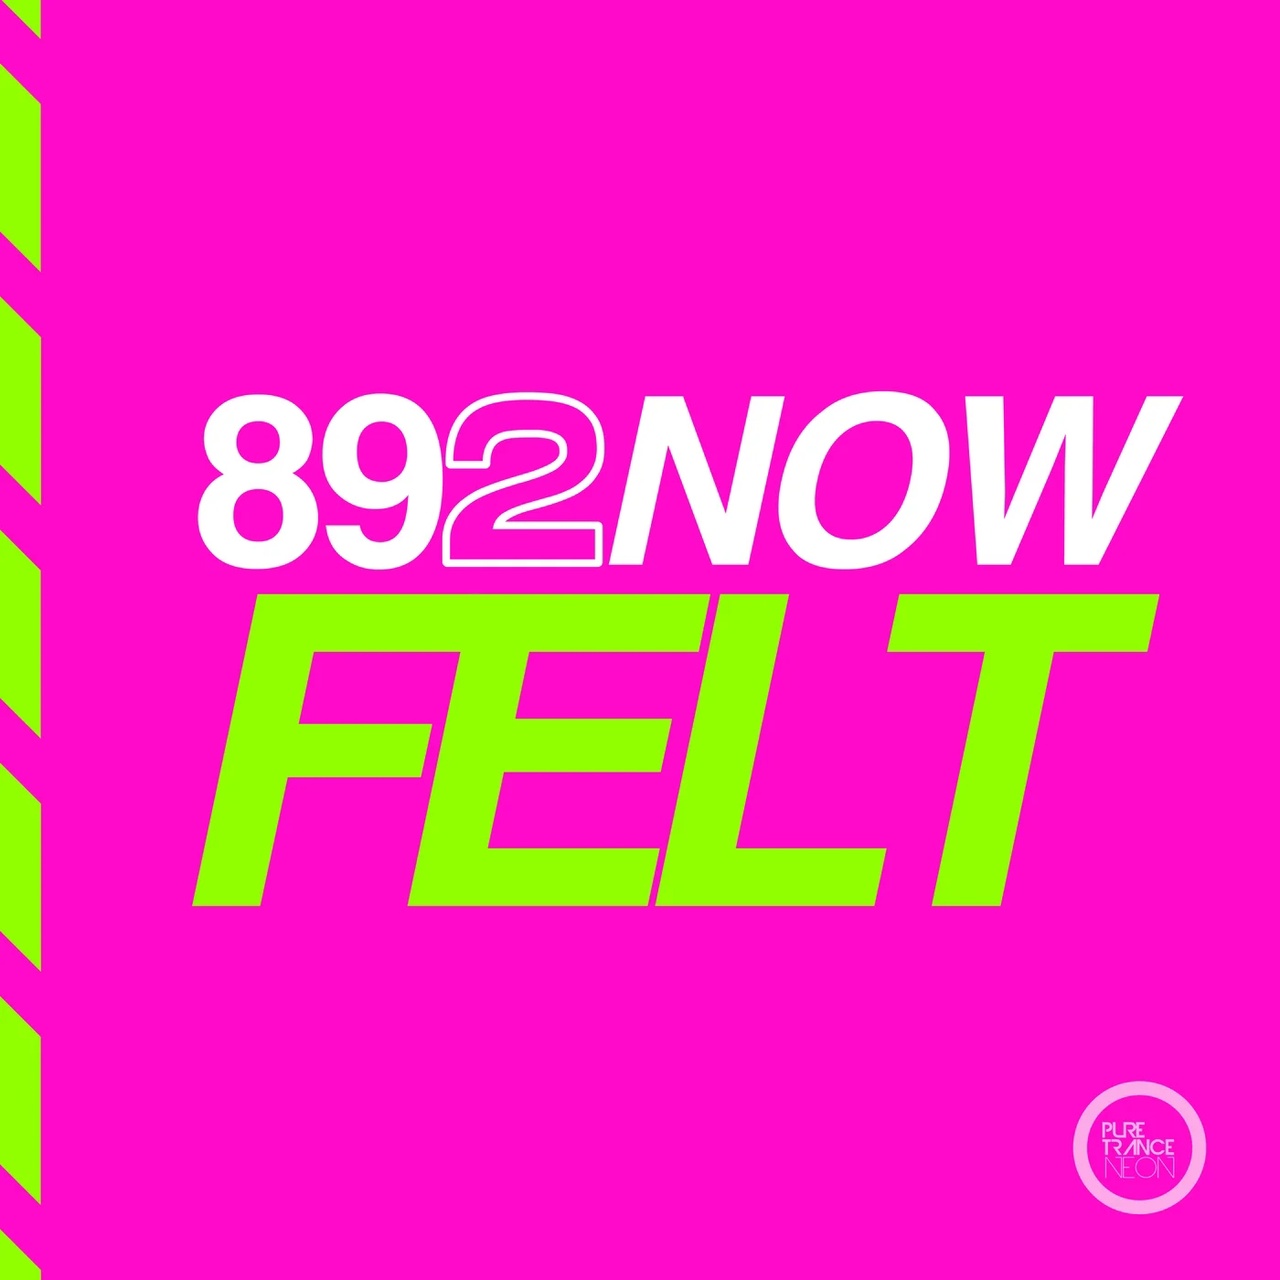 Solarstone & Obie Fernandez Presents 892Now - Felt (Concise Mix)